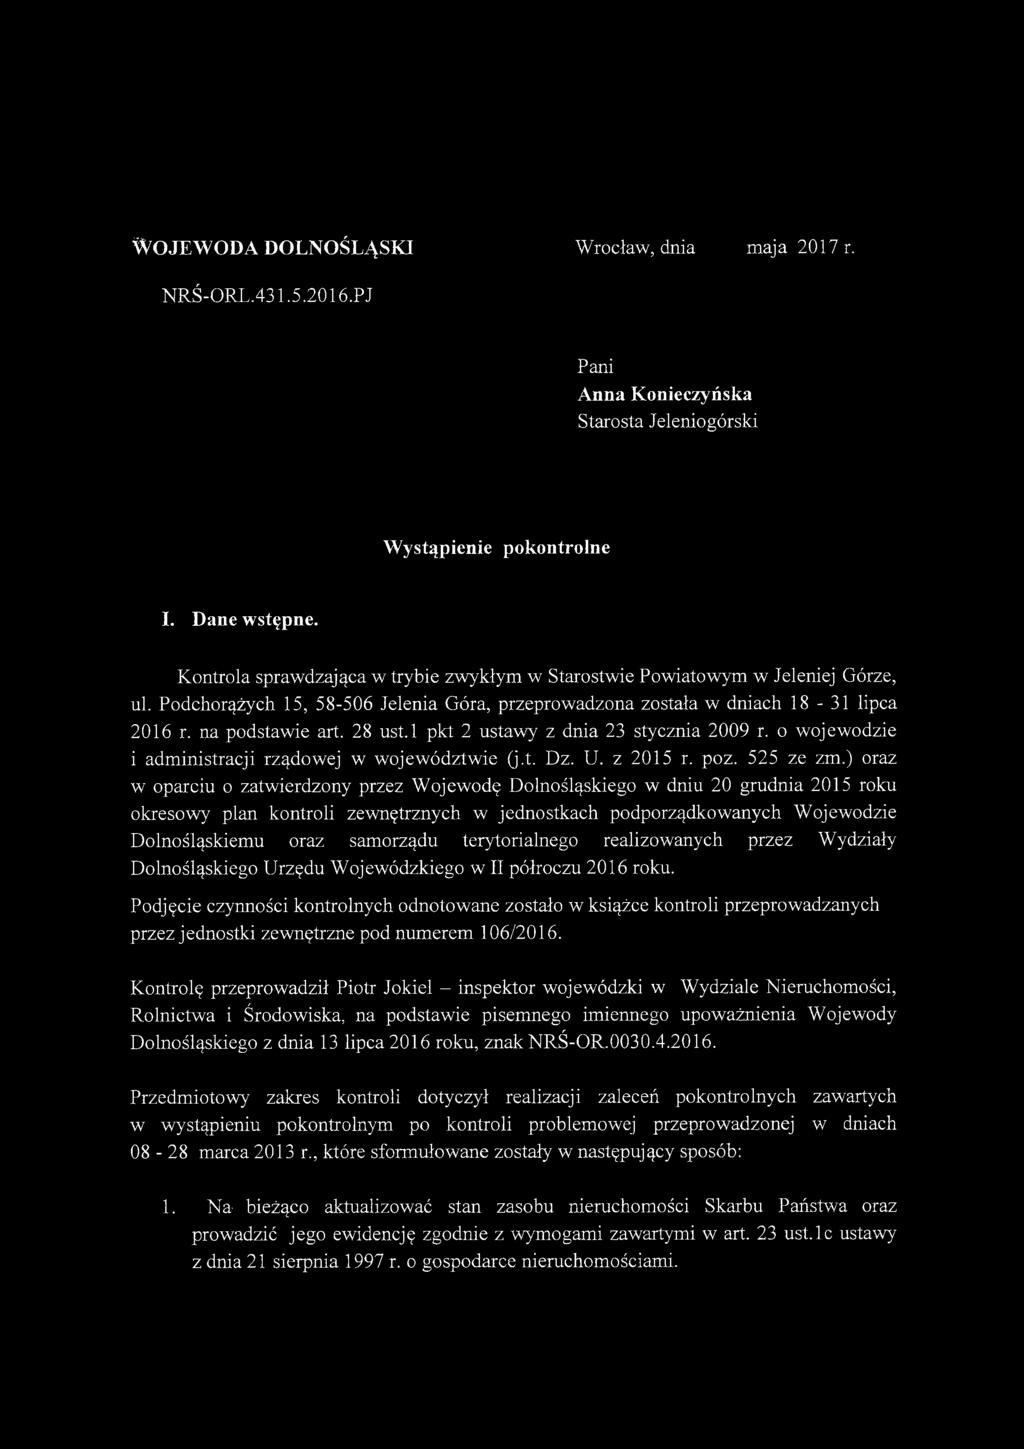 l pkt 2 ustawy z dnia 23 stycznia 2009 r. o wojewodzie i administracji rządowej w województwie (j.t. Dz. U. z 2015 r. poz. 525 ze zm.